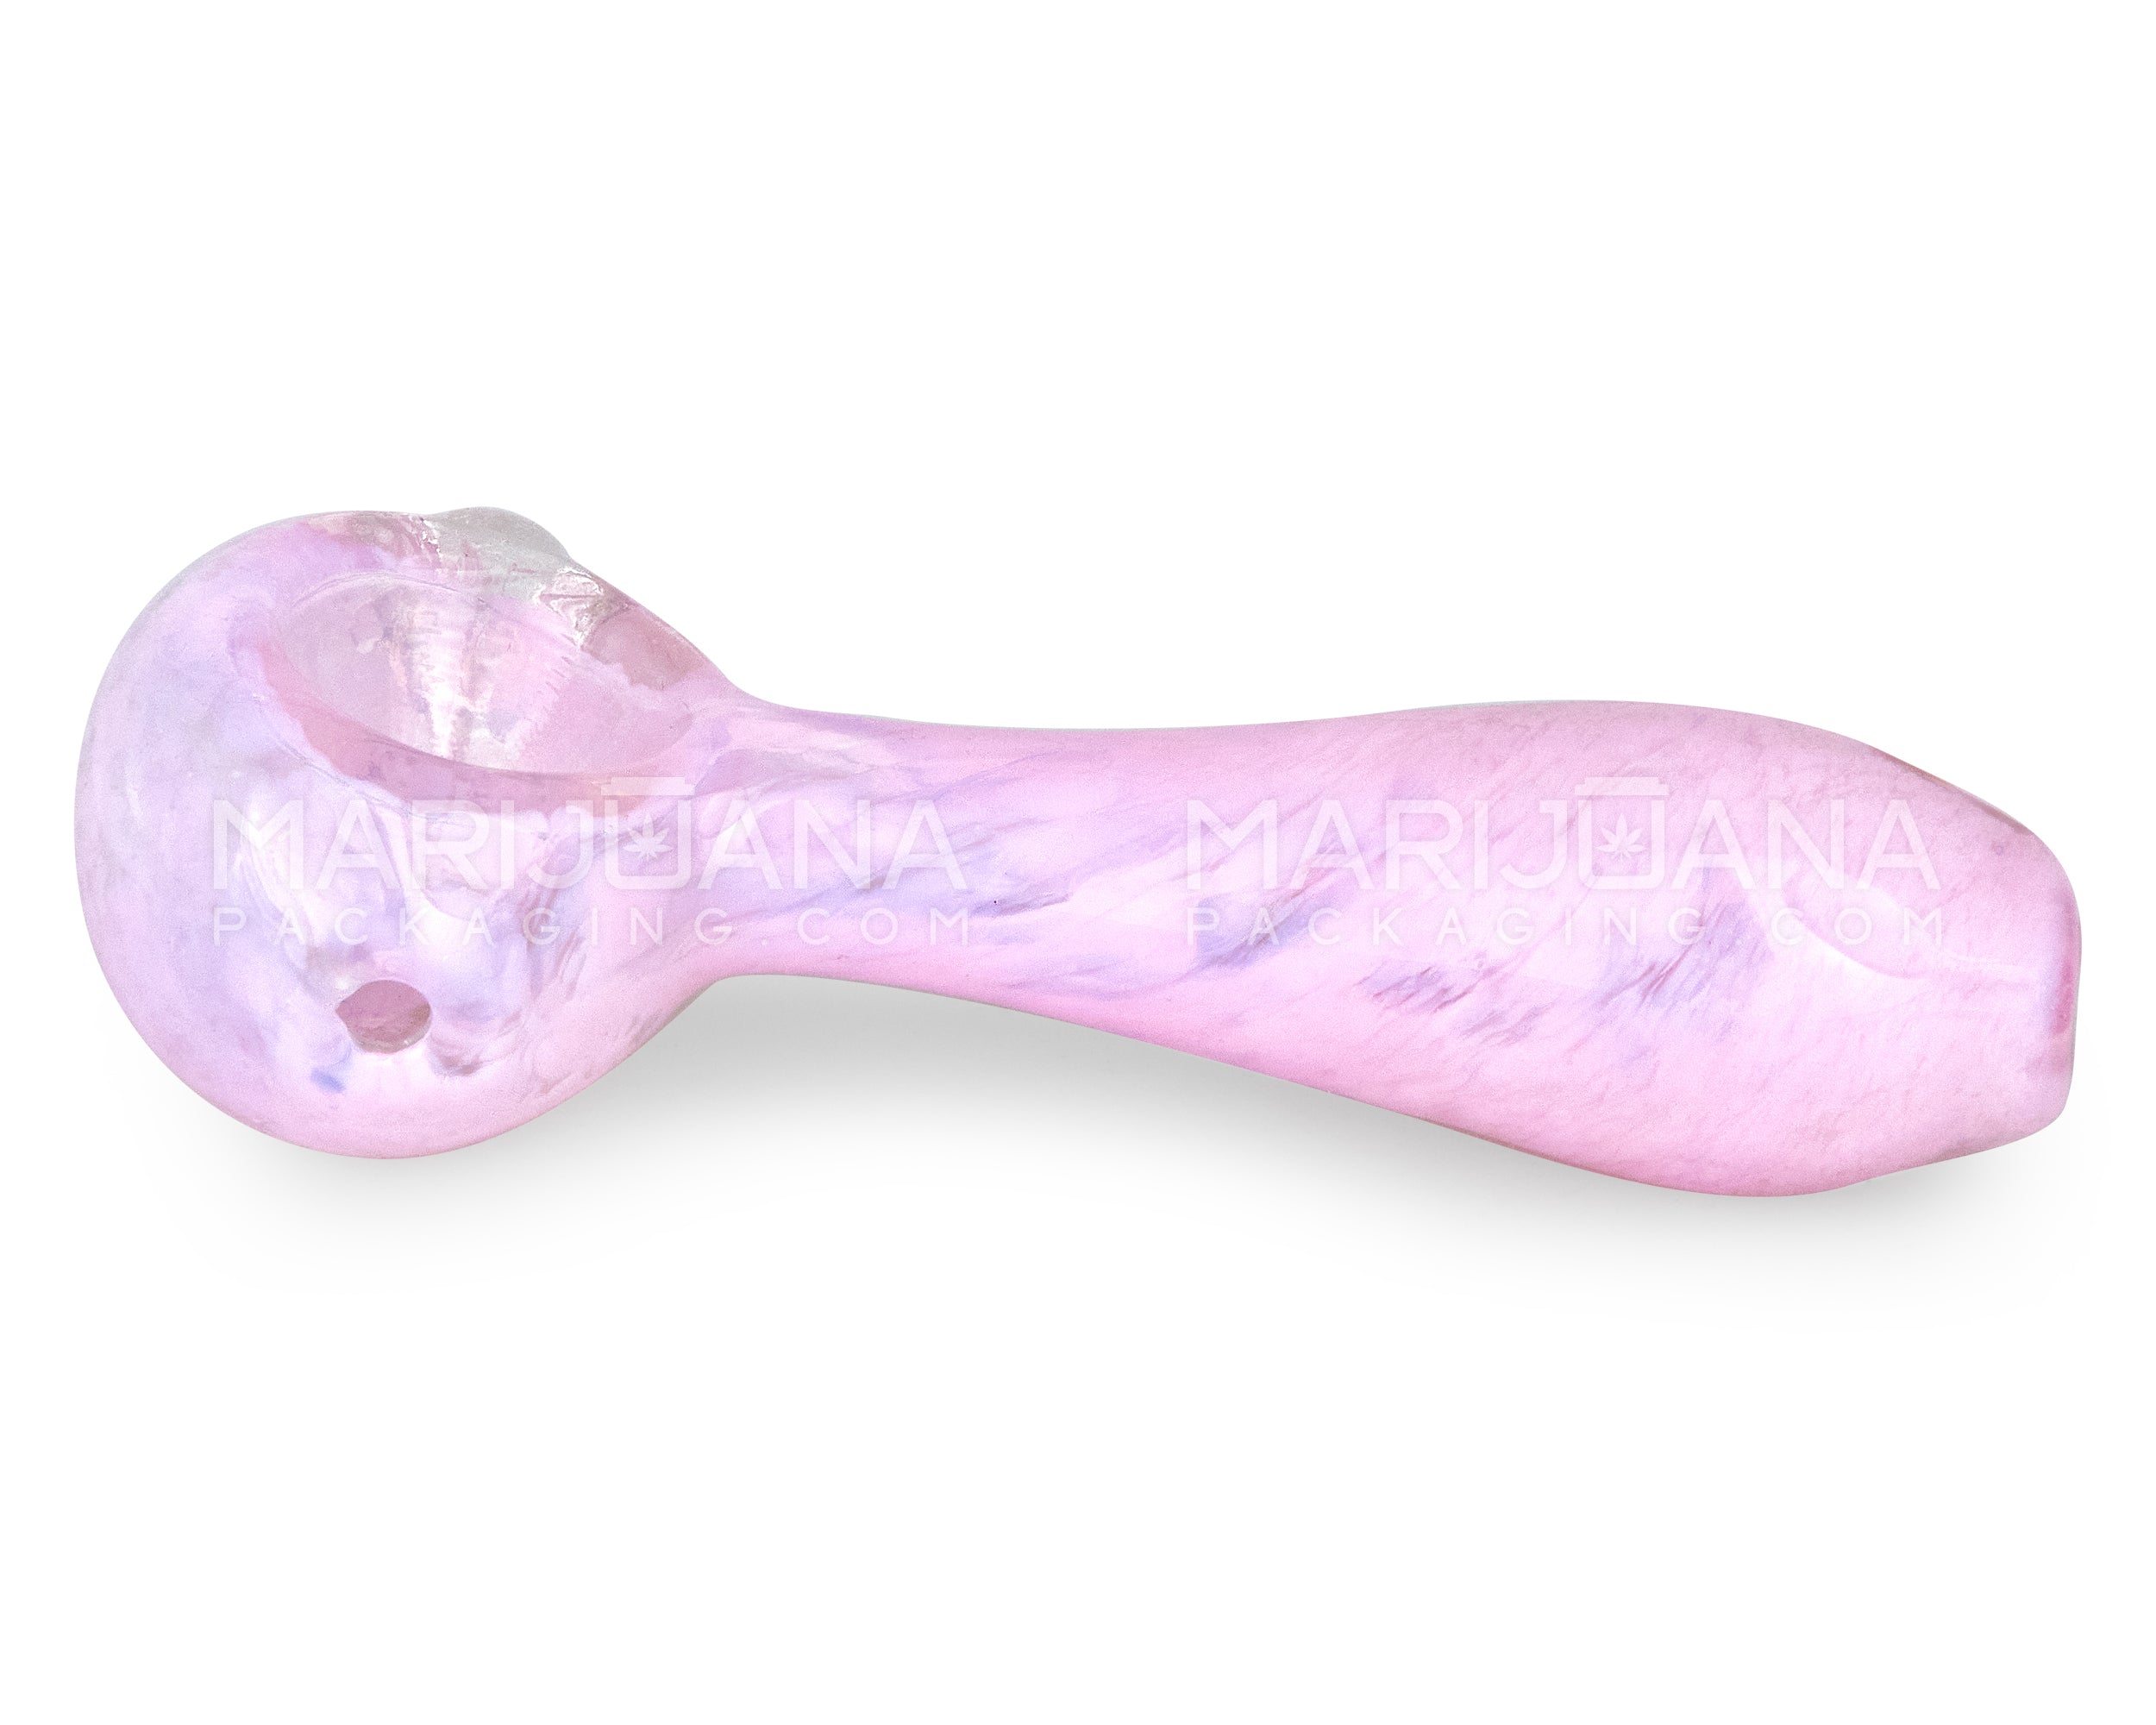 Frit Spoon Hand Pipe w/ Knocker | 4in Long - Glass - Milky Pink - 4